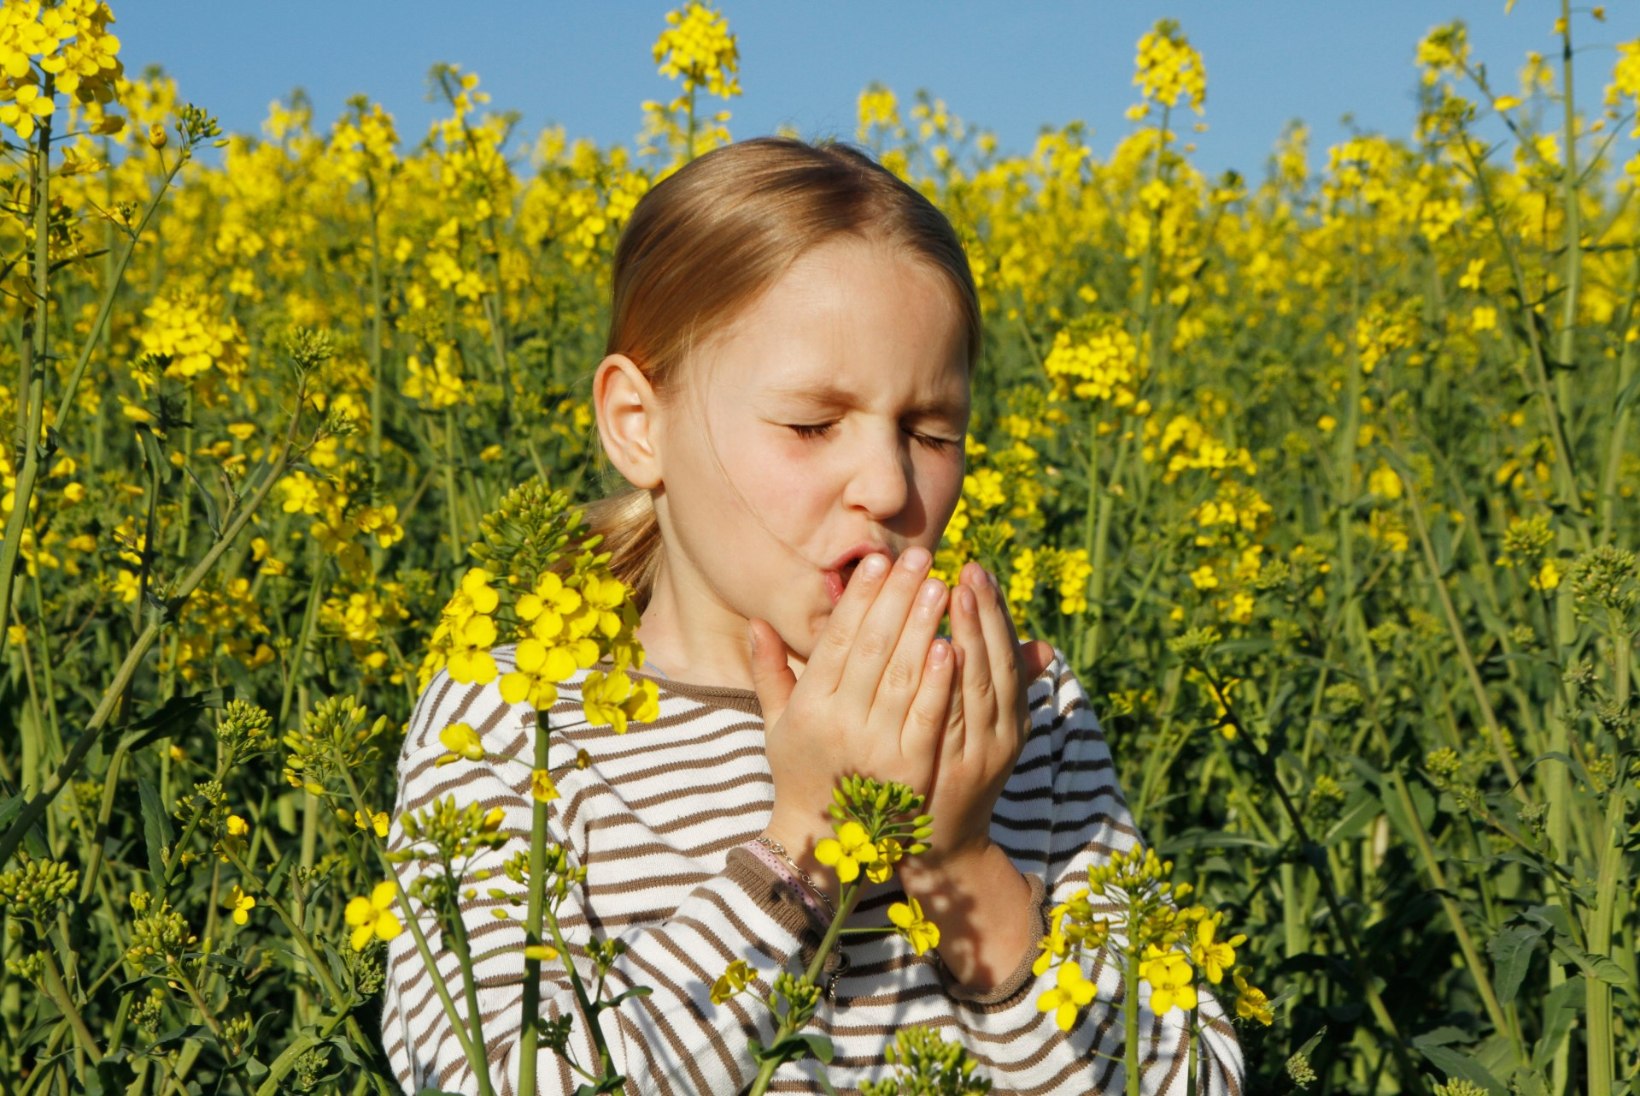 ILUS KEVAD ON TÕELINE PIIN: perearst soovitab, kuidas allergia kontrolli alla saada